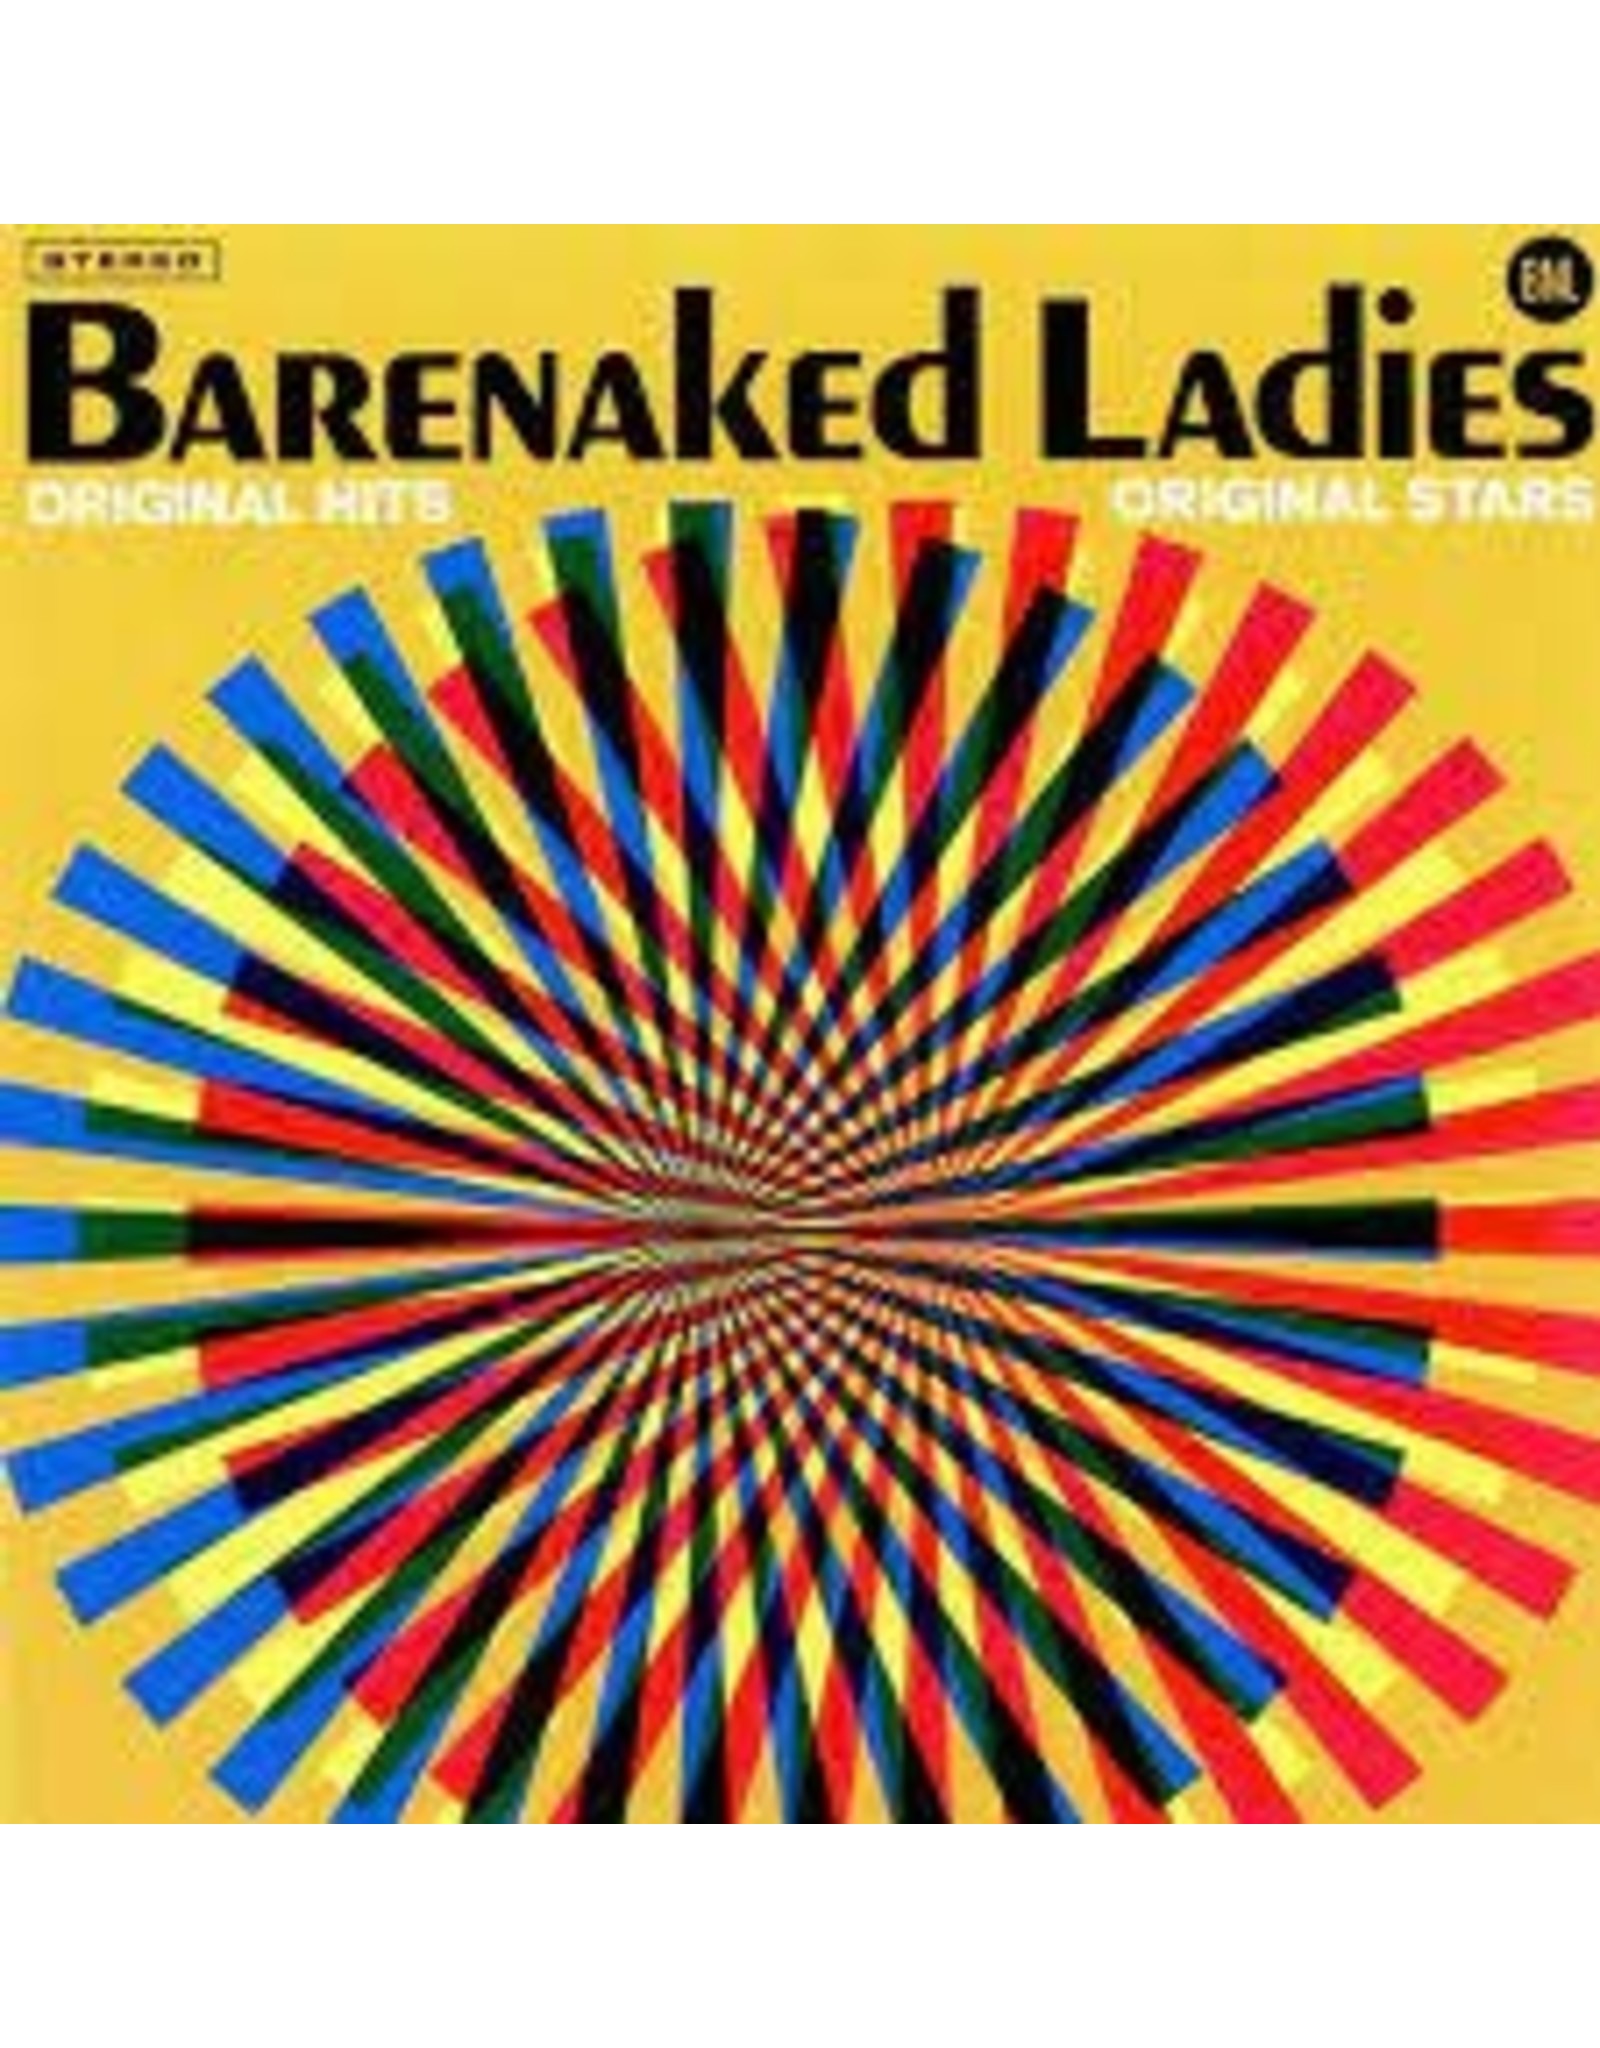 Barenaked Ladies - Original Hits Original Stars LP